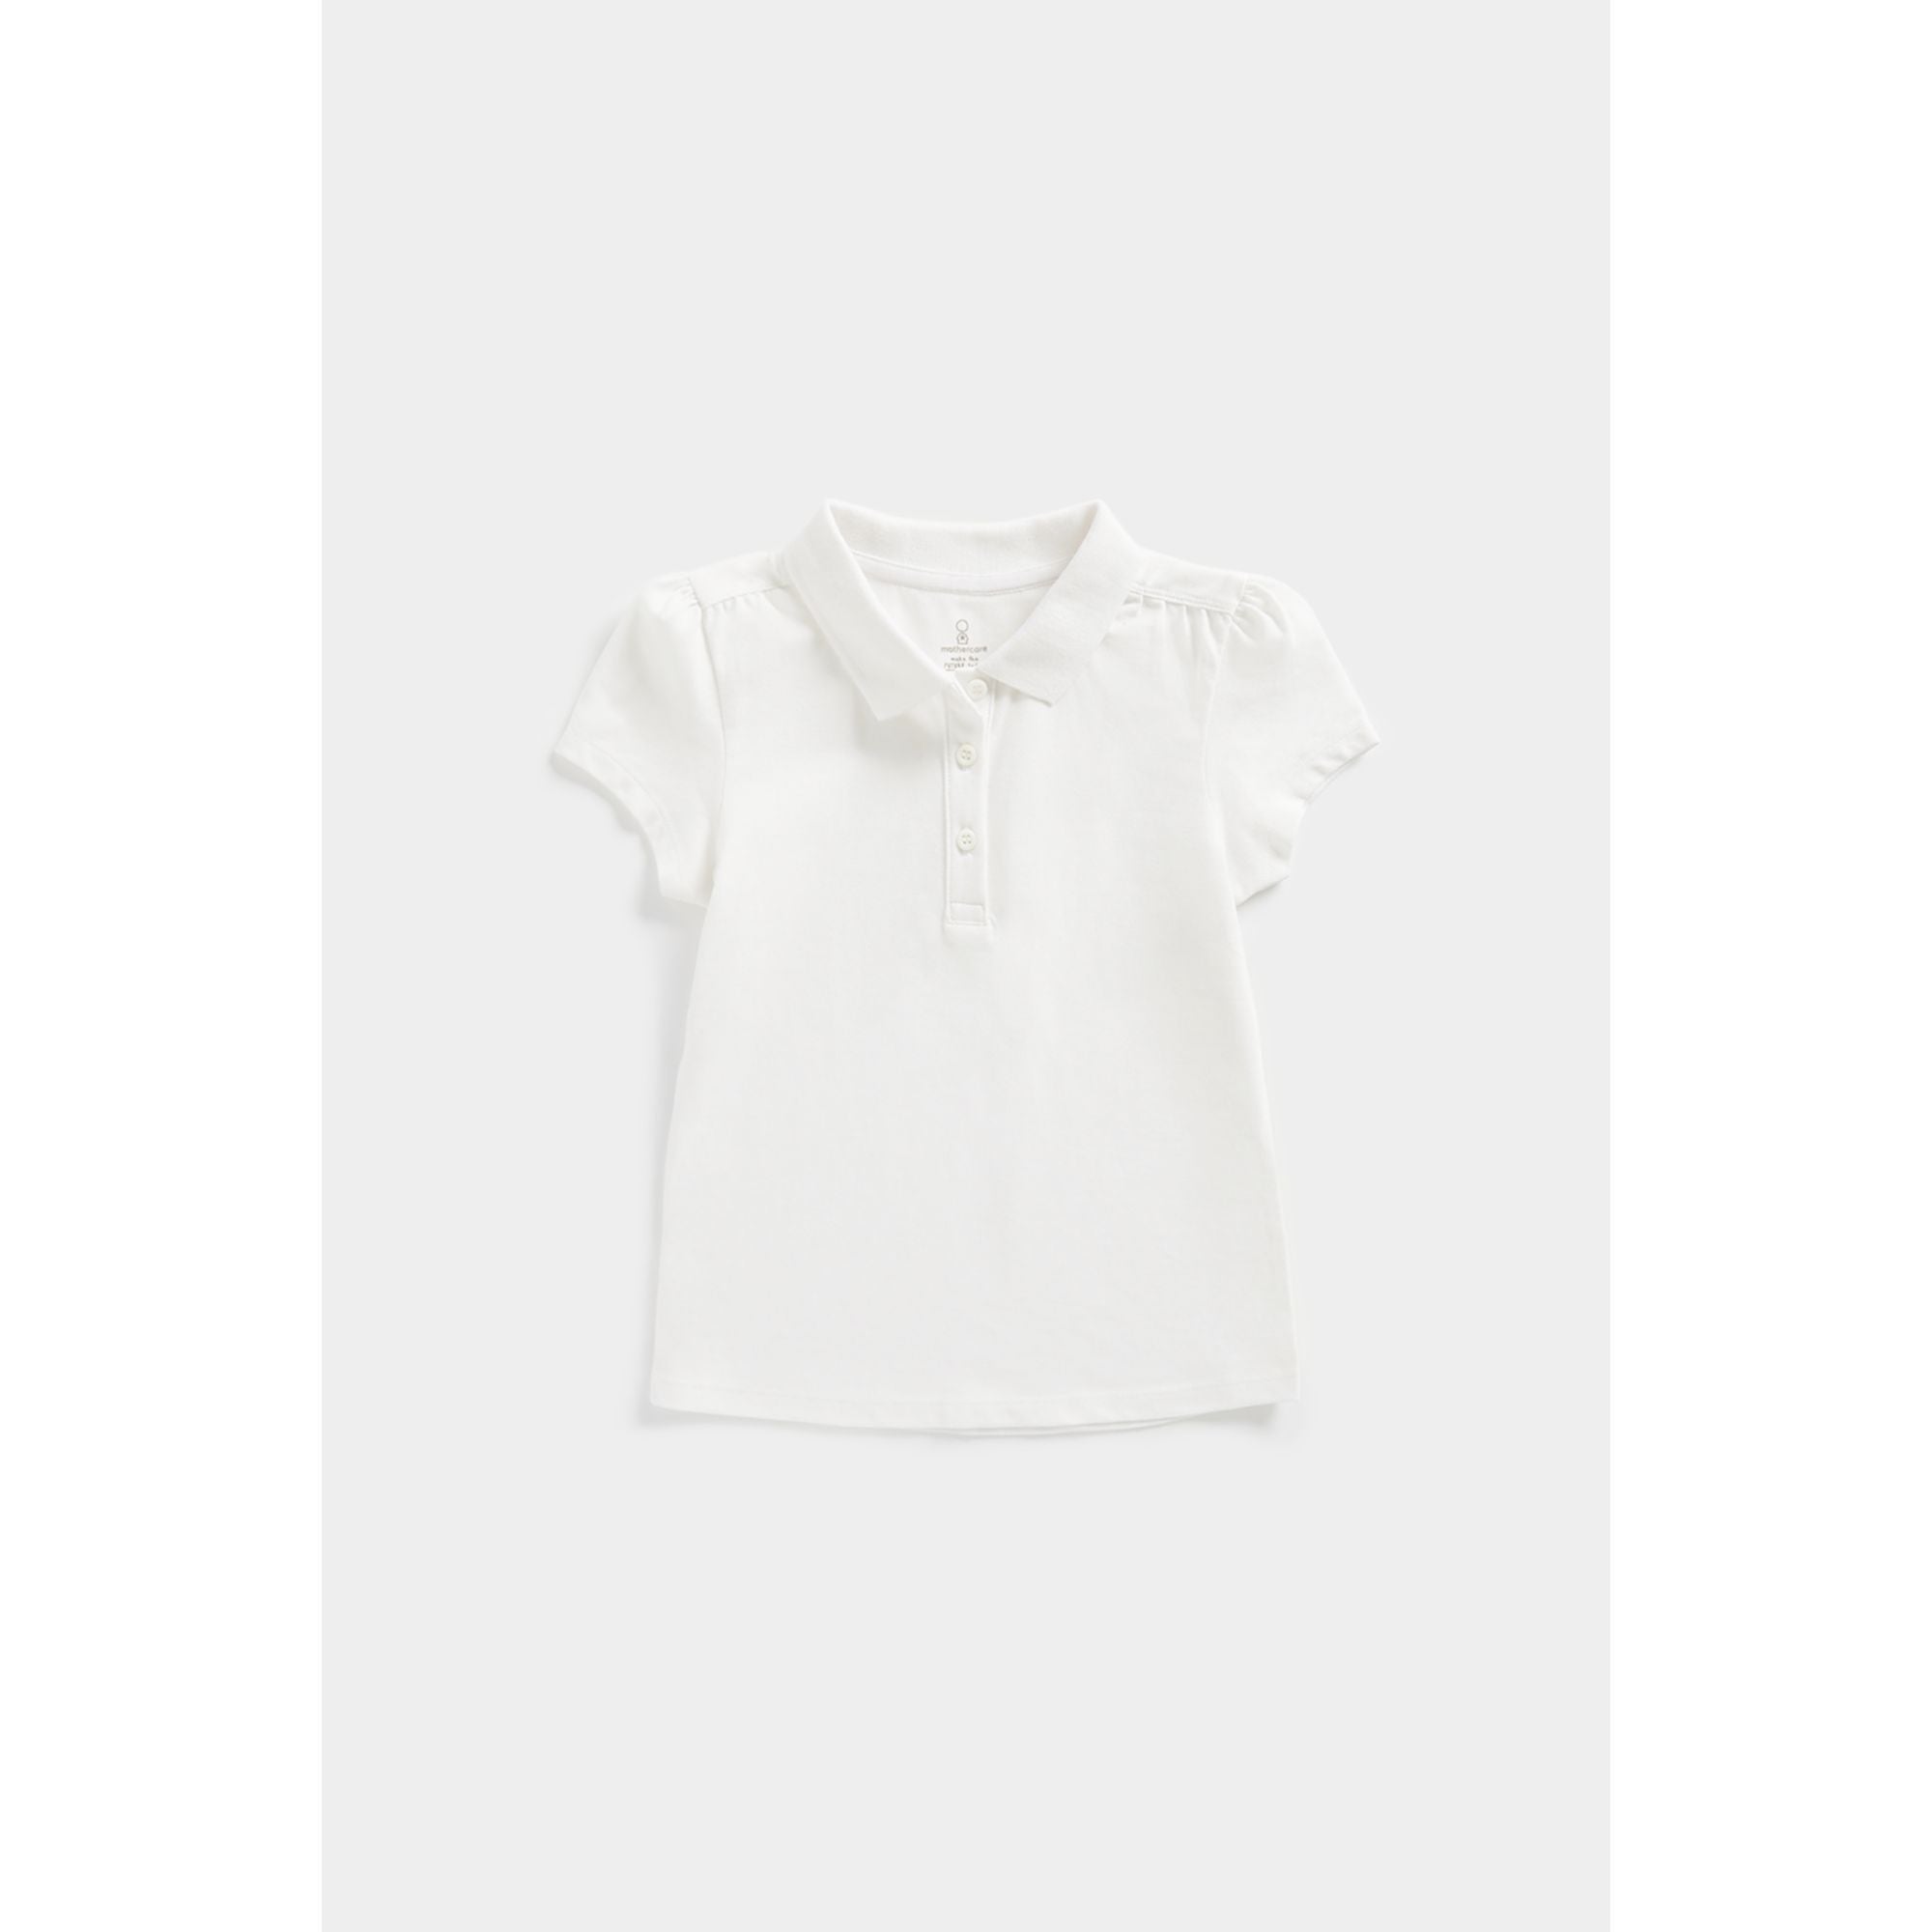 Mothercare White Polo Shirt